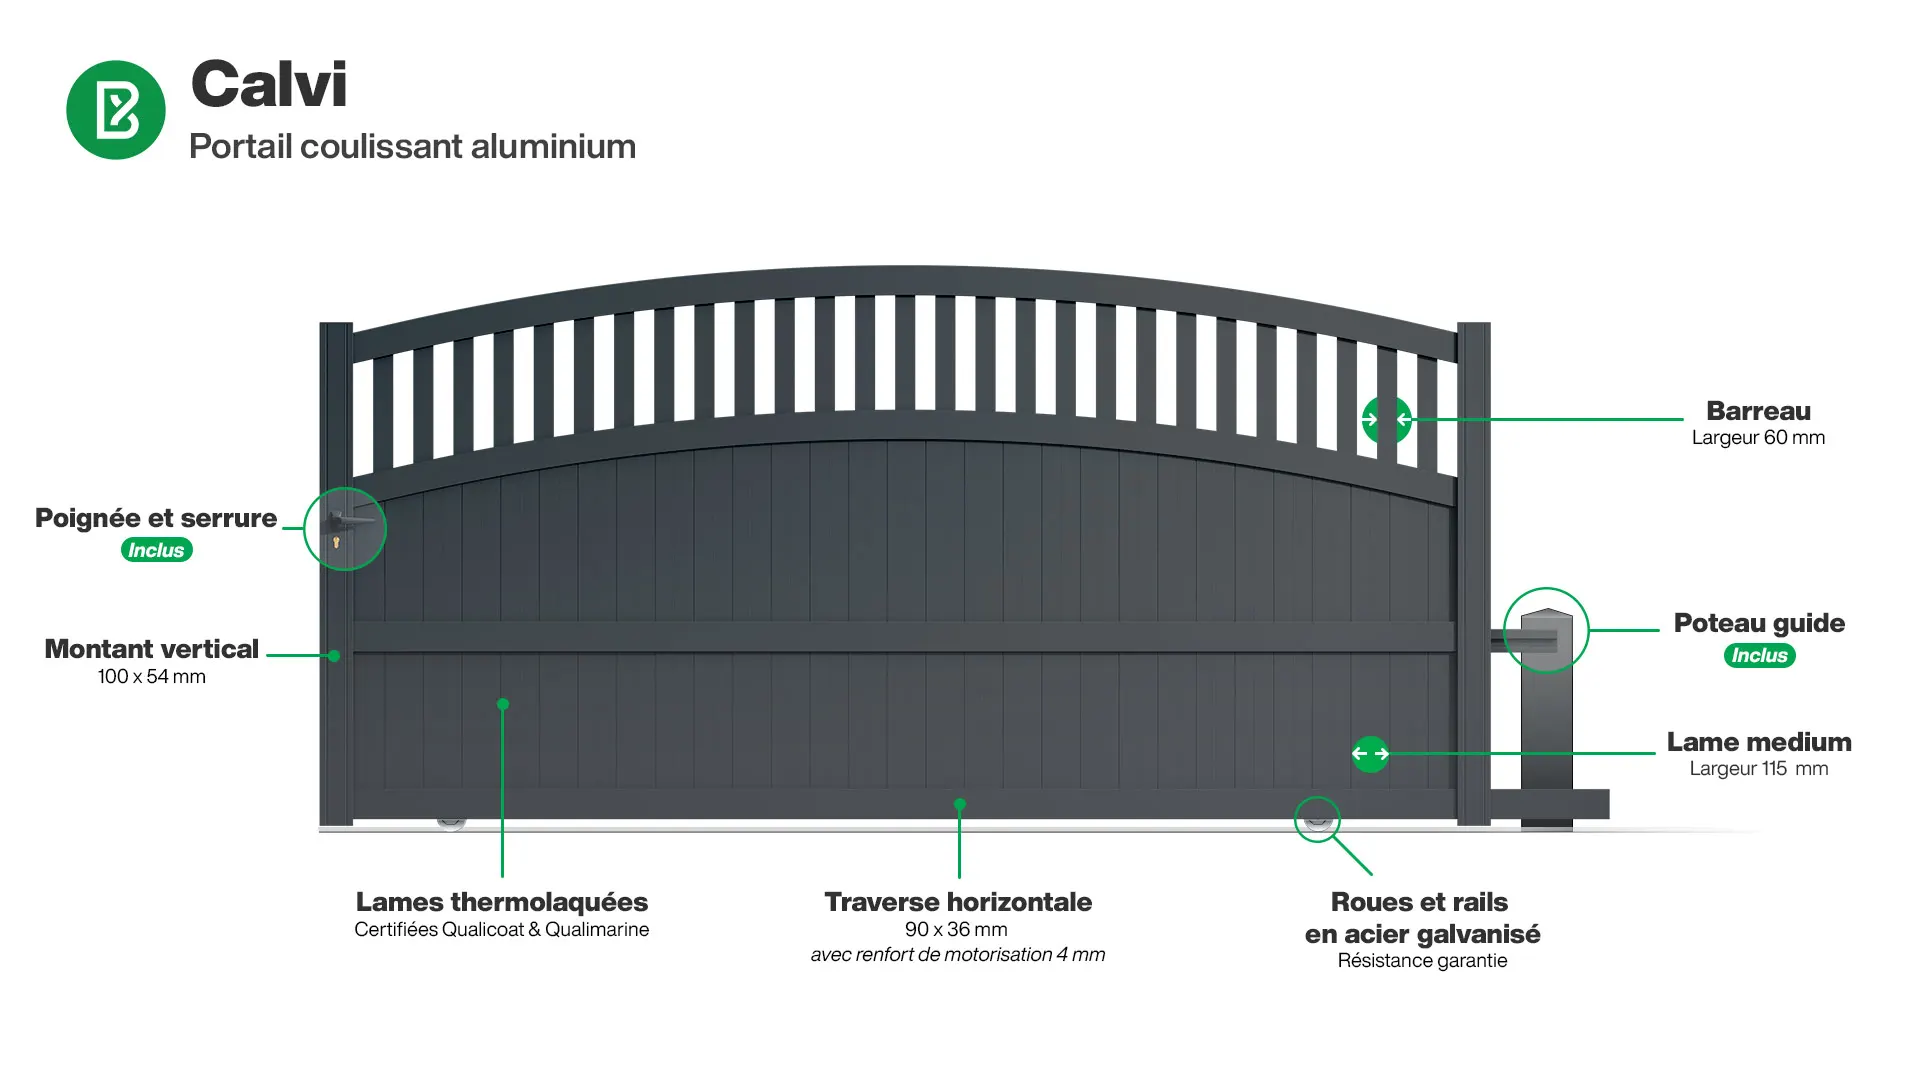 Portail : Infographie d'un portail coulissant aluminium modèle CALVI